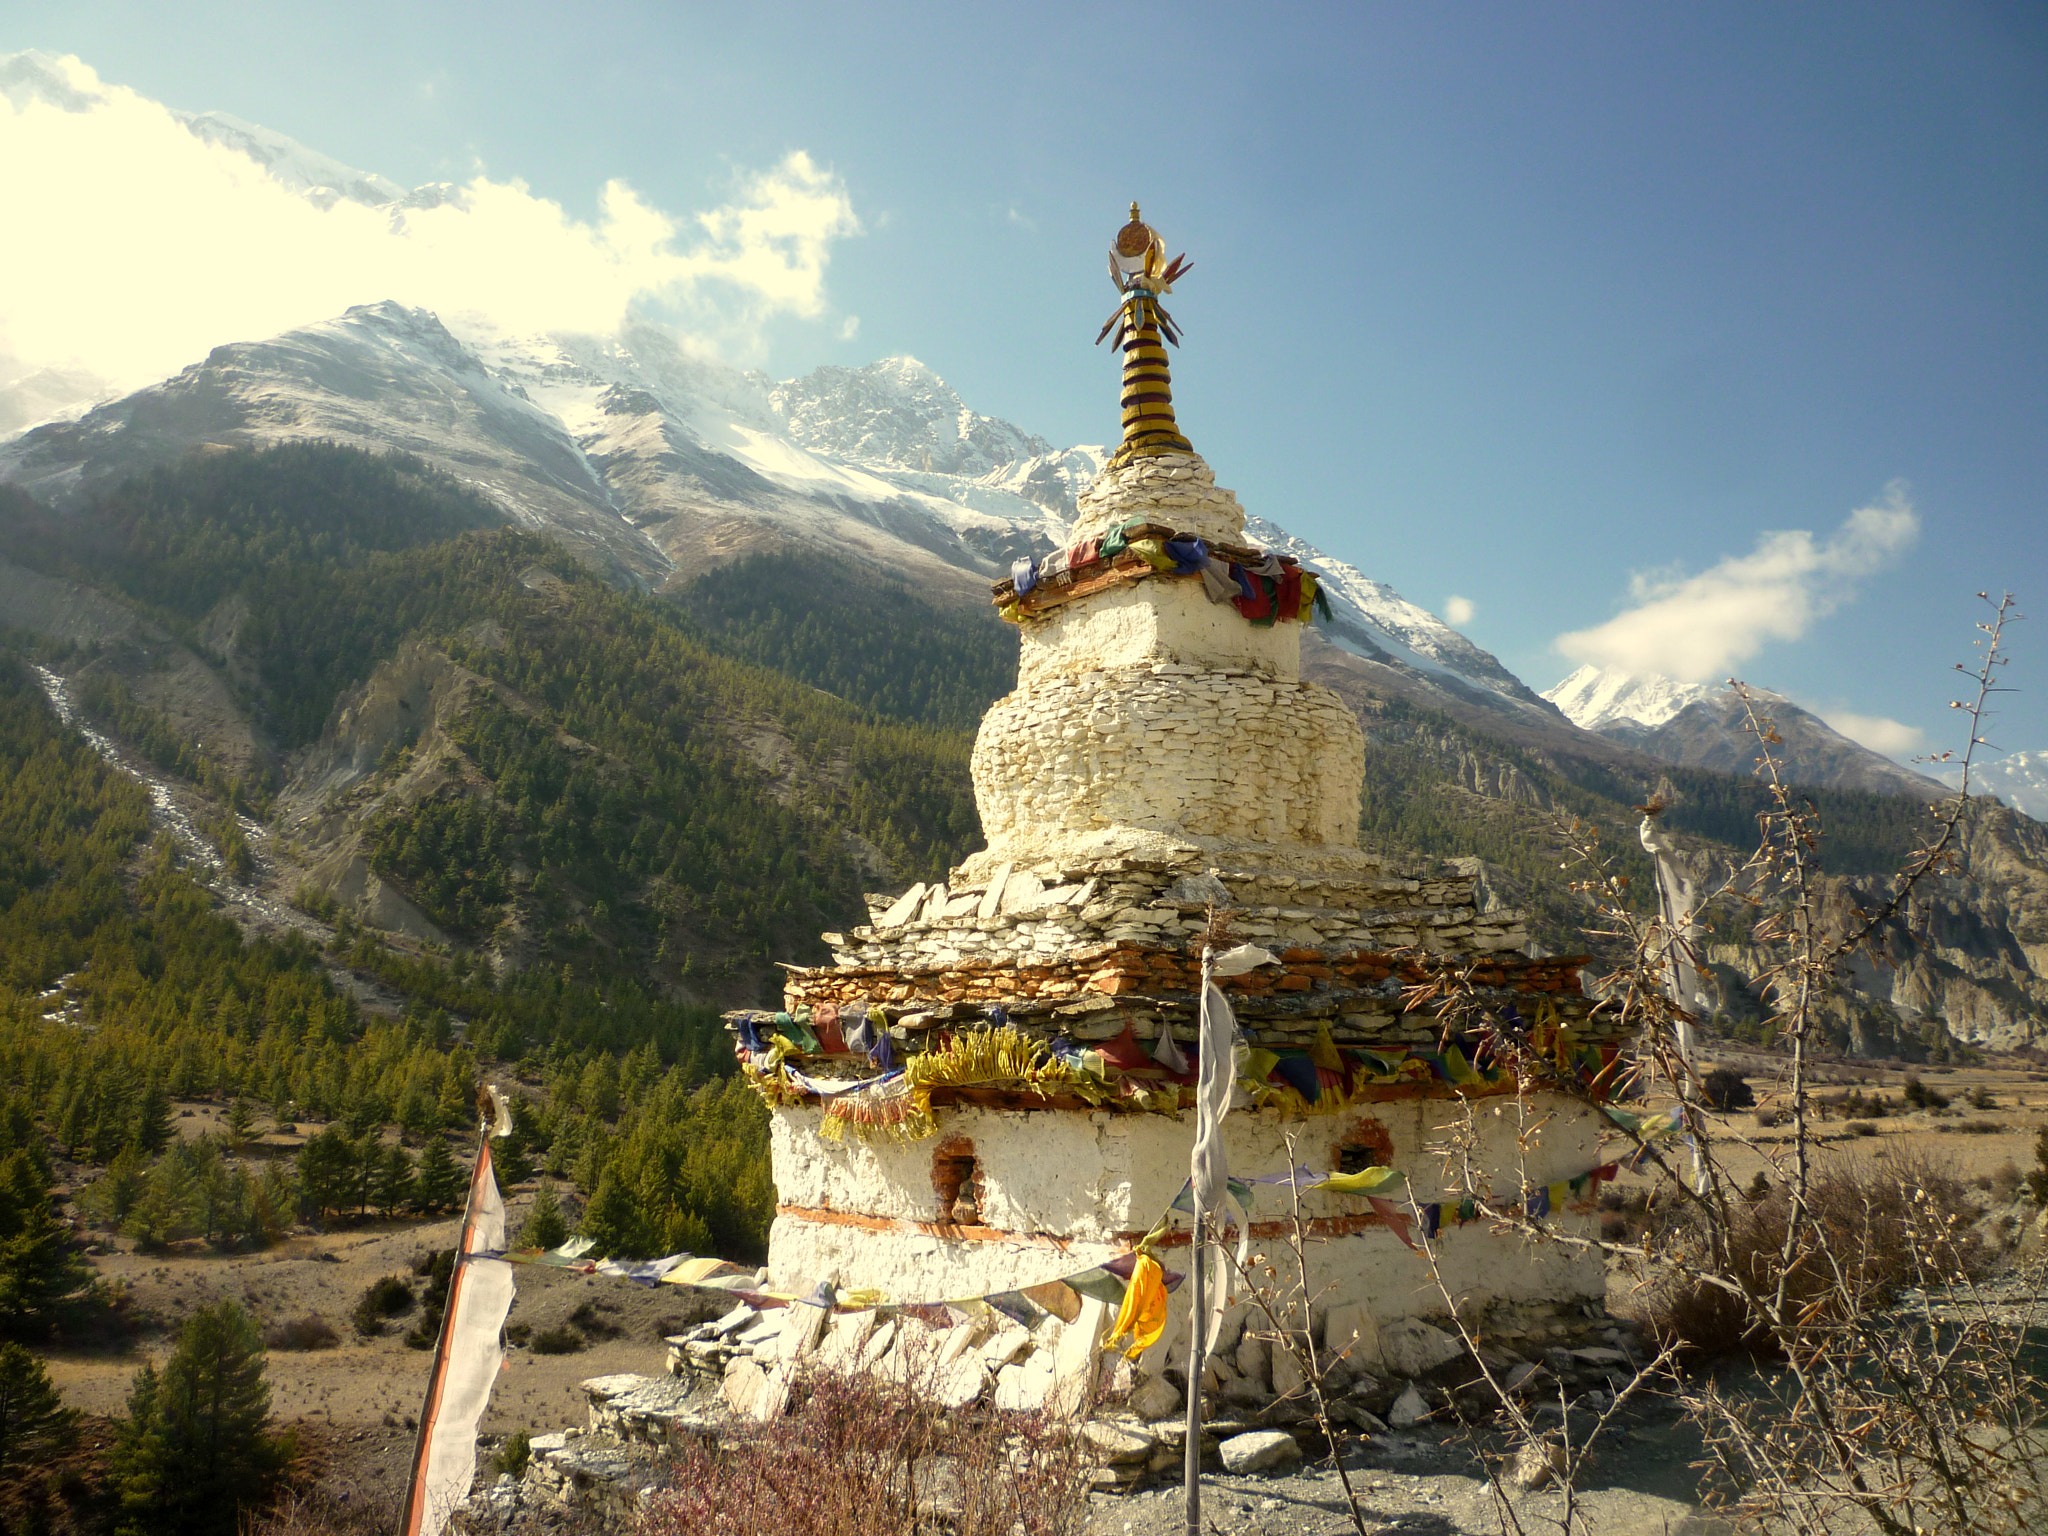 Panasonic DMC-FS15 sample photo. Nepalese stupa photography